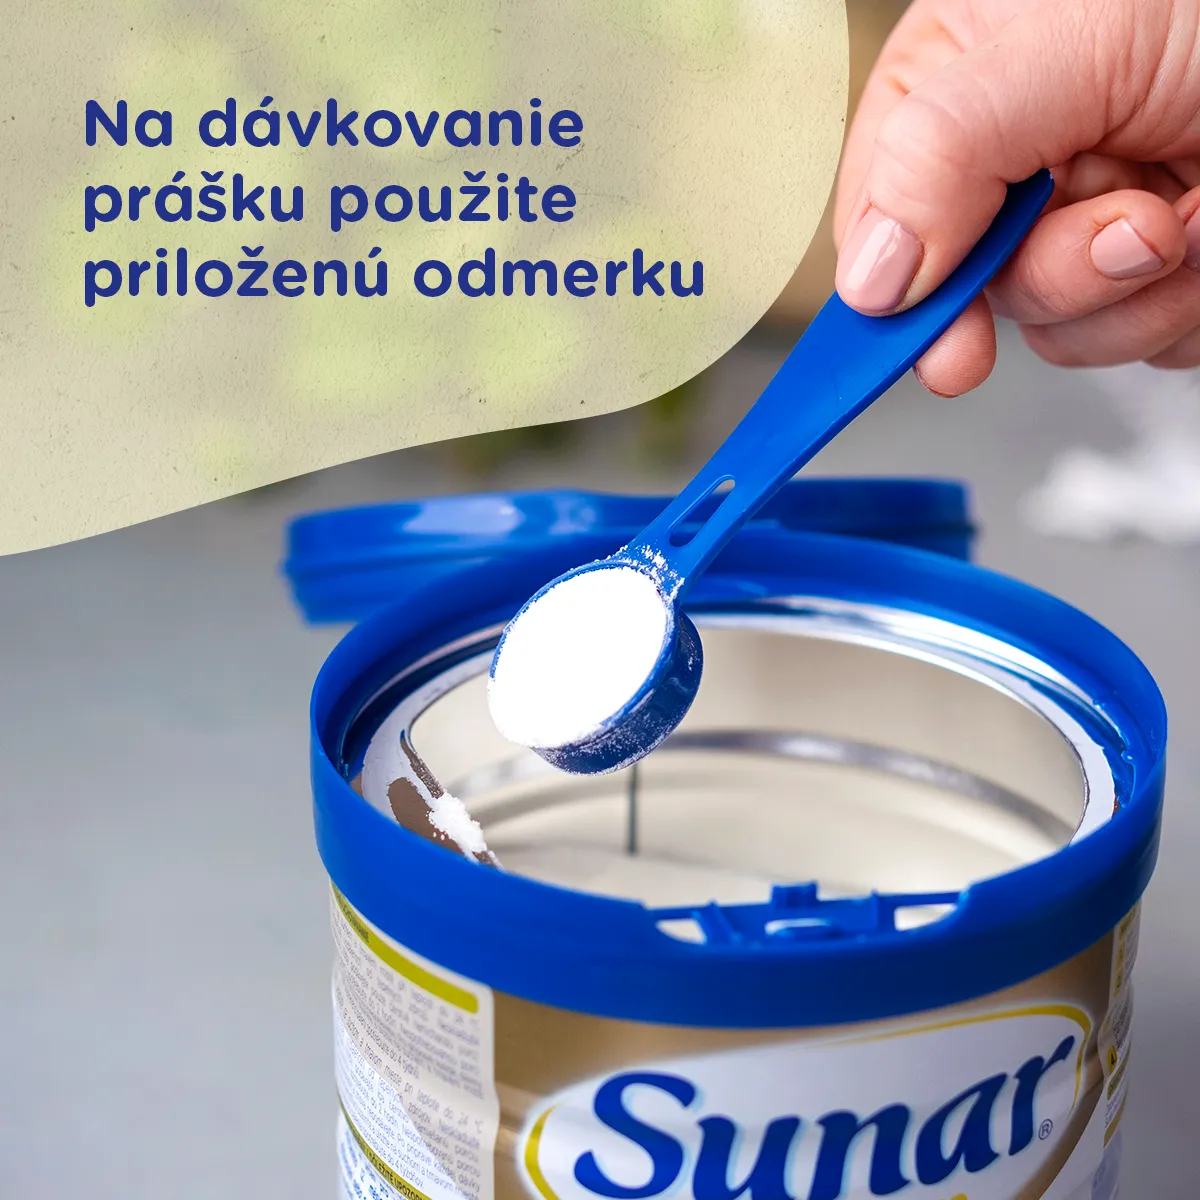 Sunar Premium 4 1×700 g, dojčenské mlieko, od 24. mesiaca